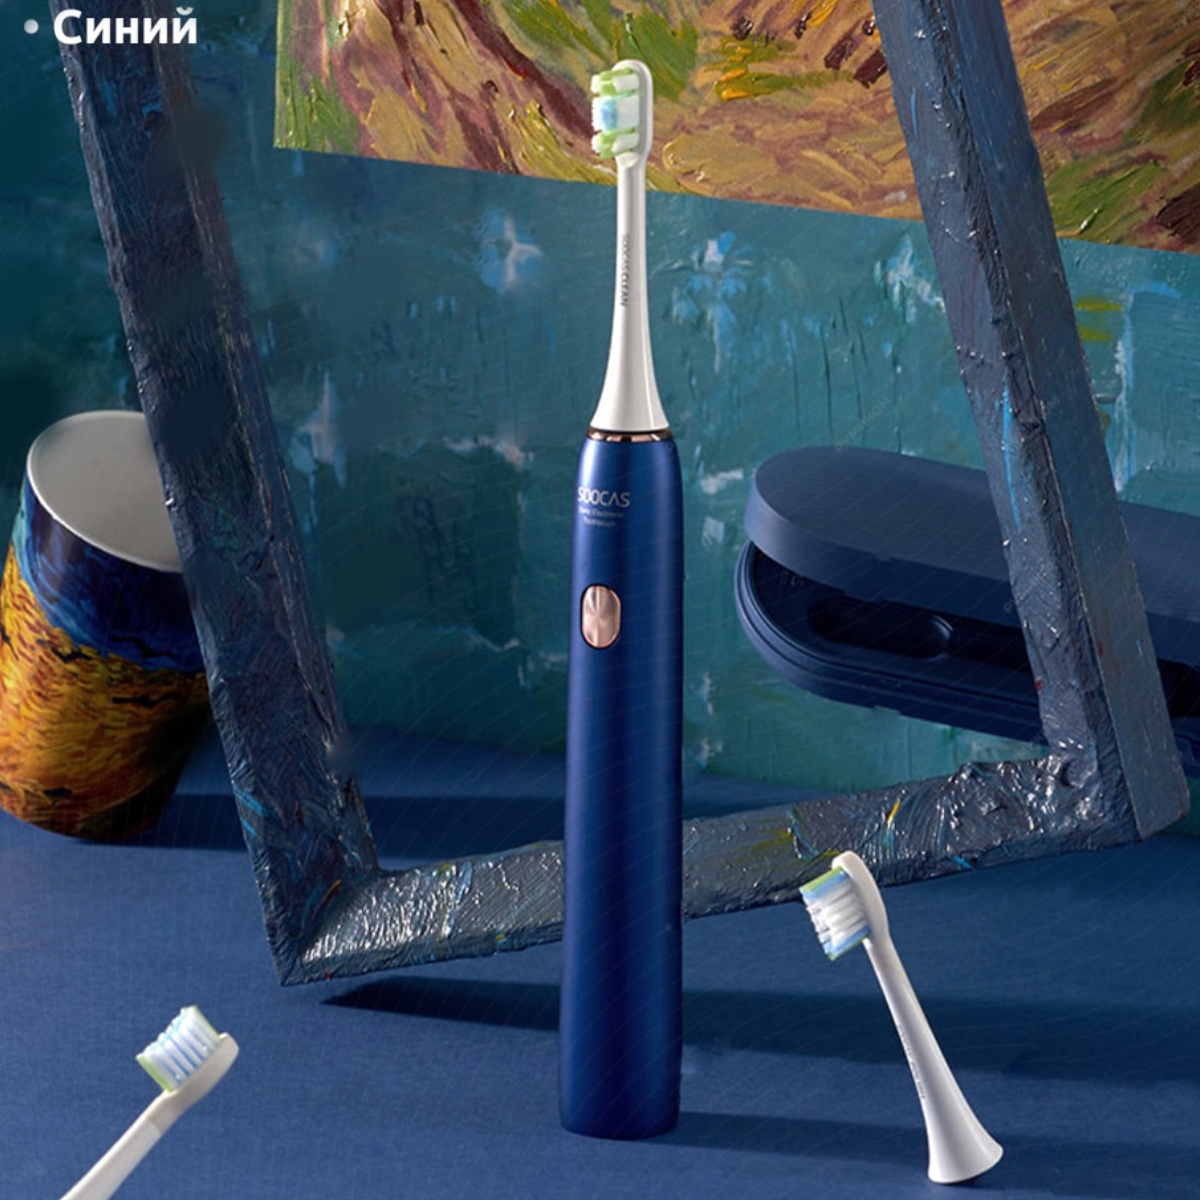 XiaoMi-Soocas-Toothbrush-X3U-Van-Gogh-Museum-Design-02